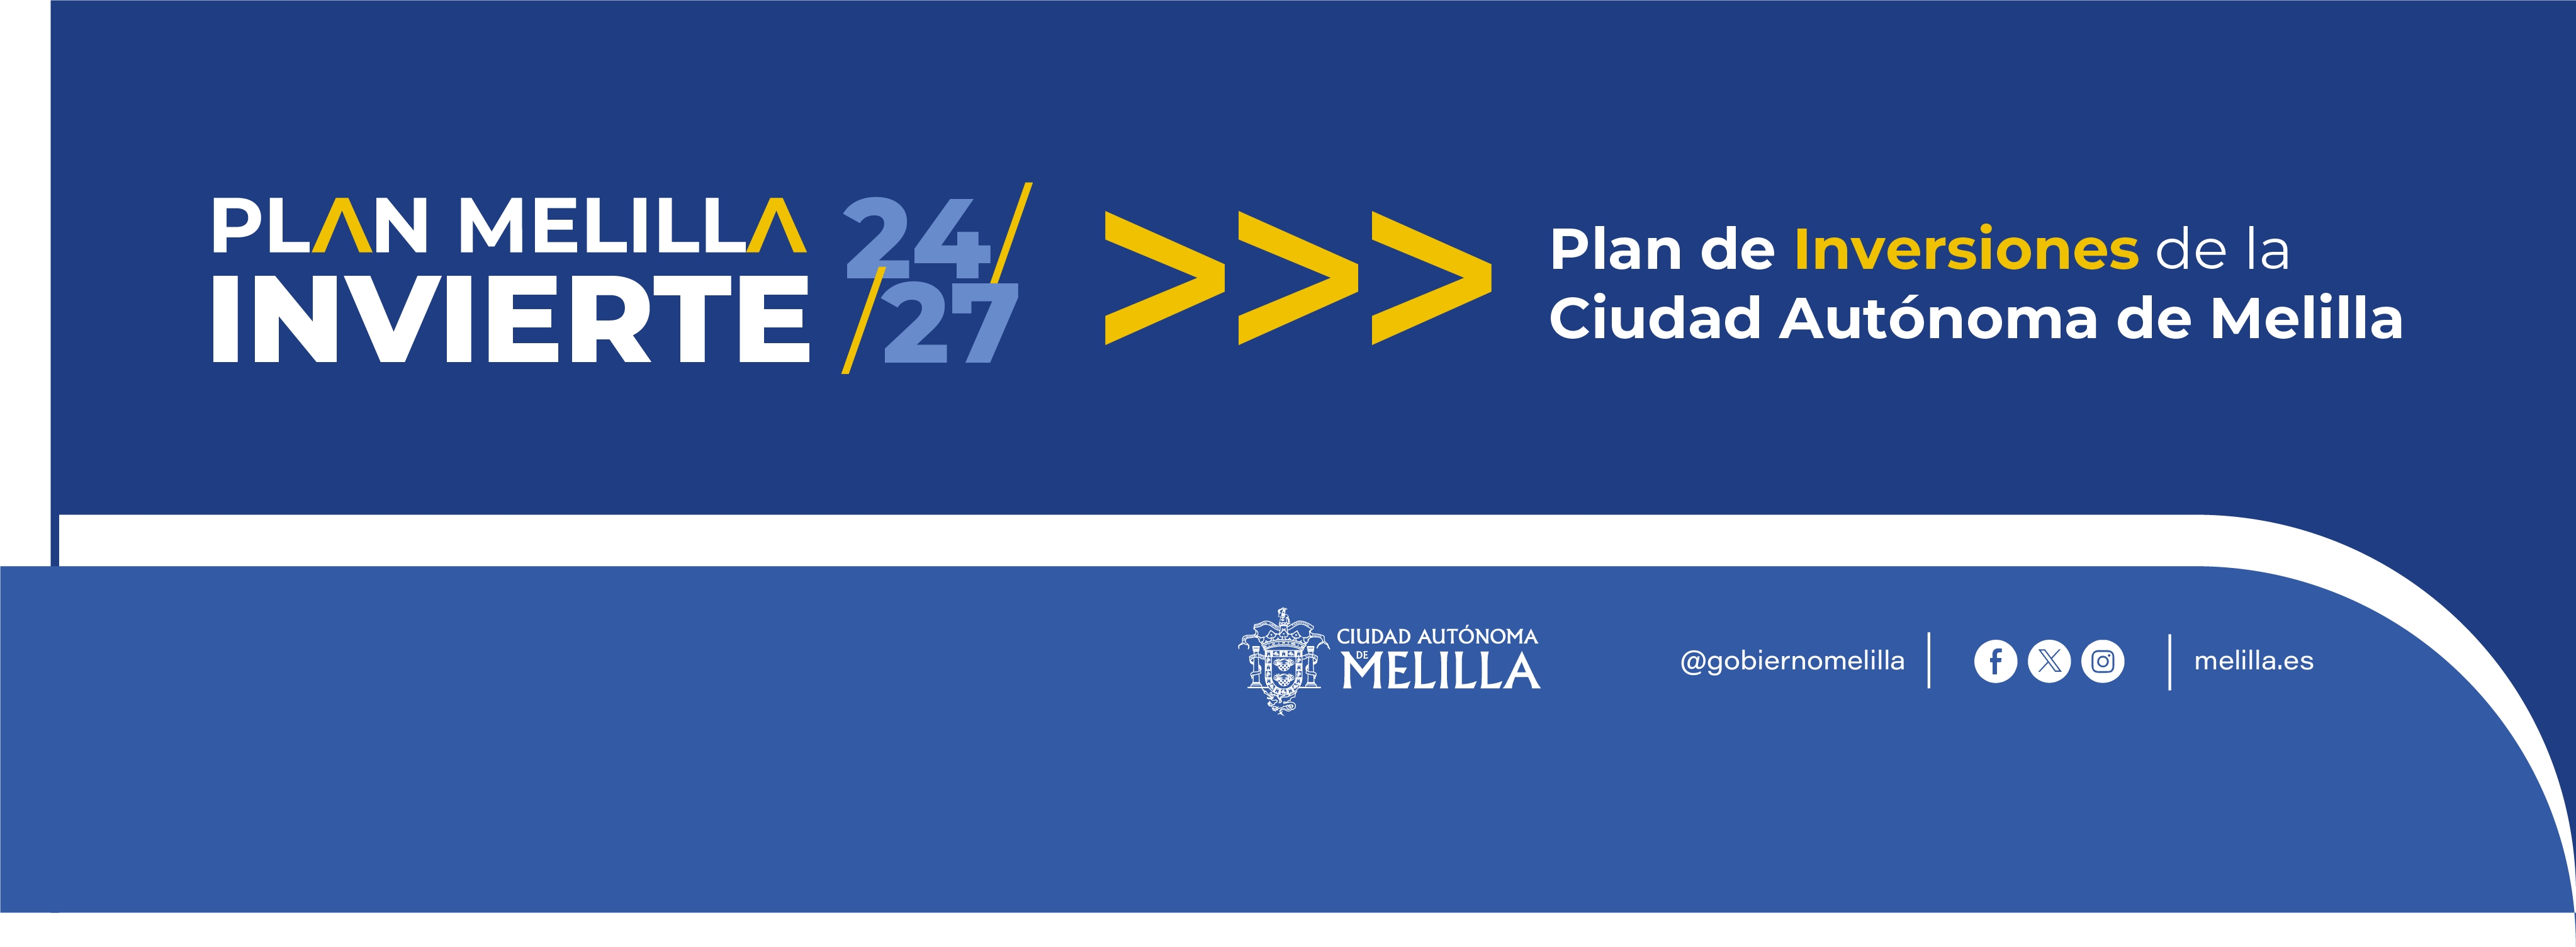 Campaa Plan Melilla Invierte 24/27